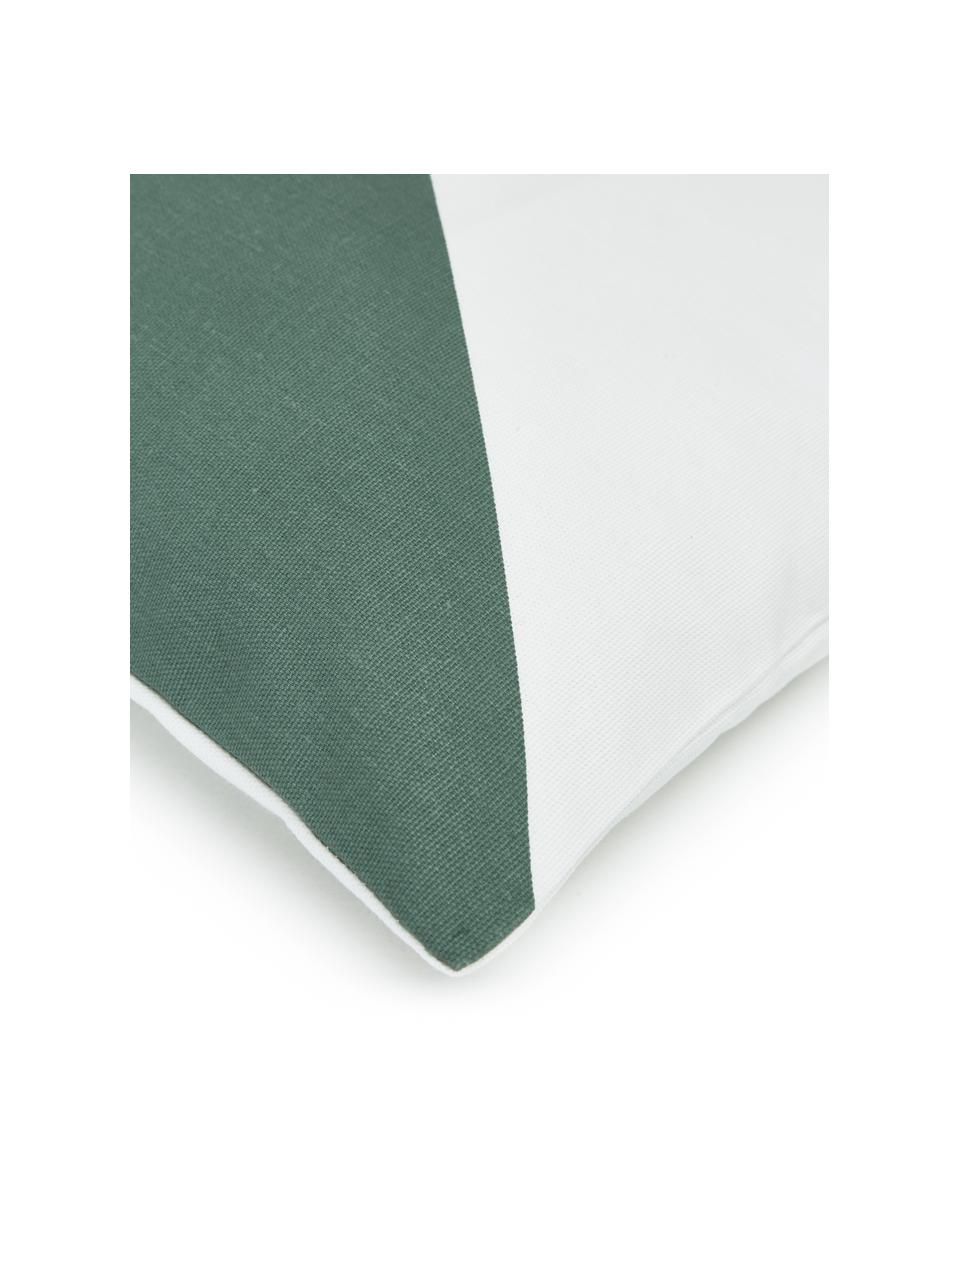 Poszewka na poduszkę Ren, 100% bawełna, Biały, szałwiowy zielony, S 30 x D 50 cm